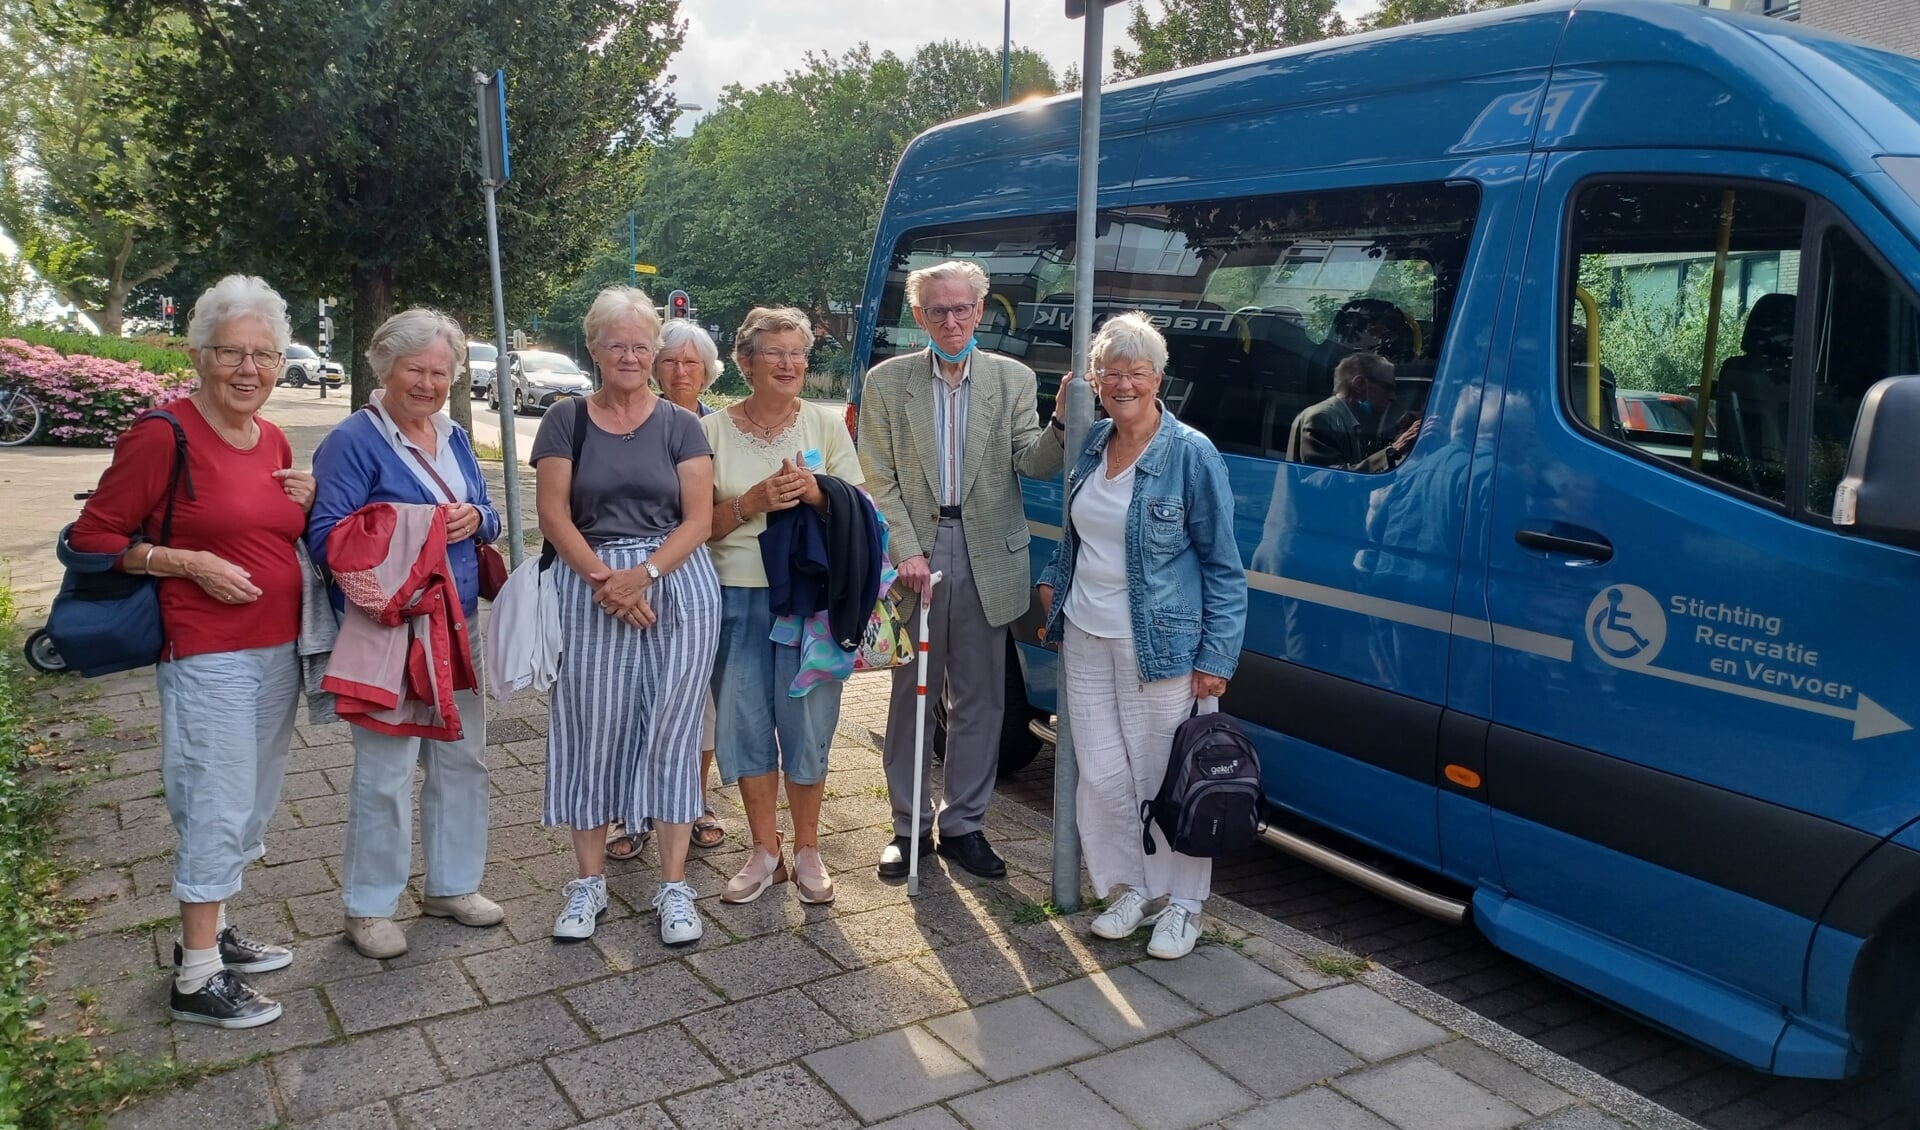 De Blauwe PlusBus is een samenwerking tussen de Stichting Radius en Stichting Recreatie en Vervoer om uitstapjes aan te bieden aan de inwoners van Oegstgeest.